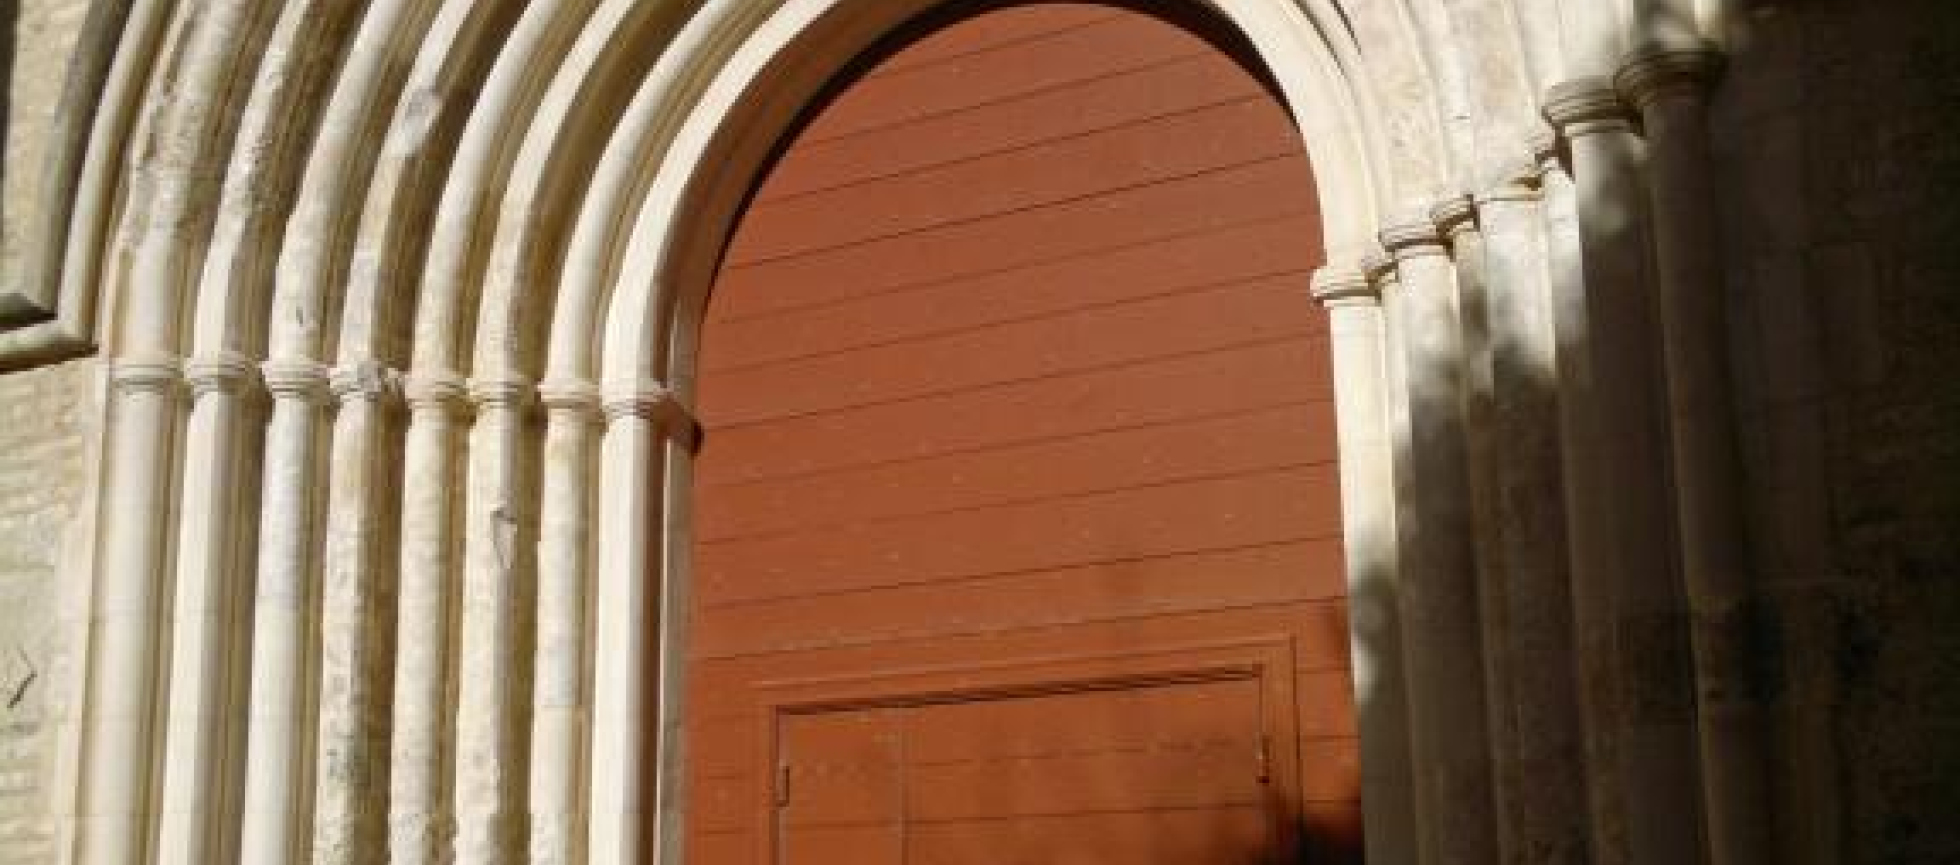 Vue de la porte d'entrée de l'église du couvent: 8 demi colonnes et tores ornent cette entrée